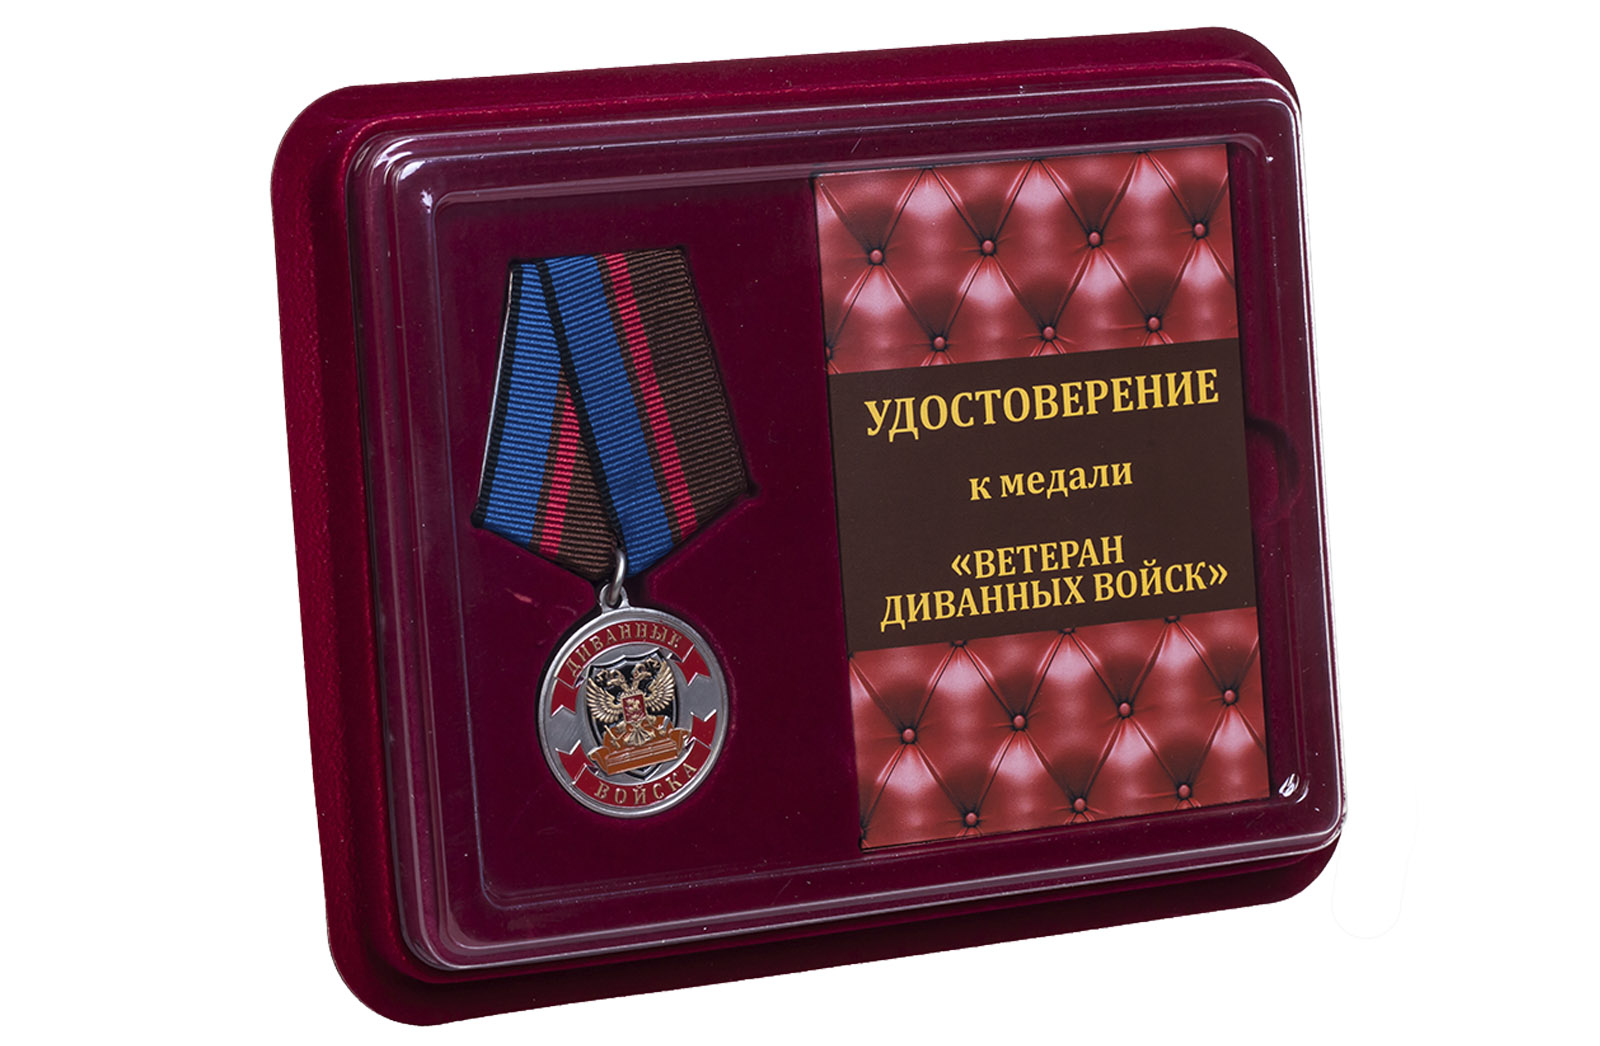 Купить сувенирную медаль Ветеран Диванных войск в подарок другу